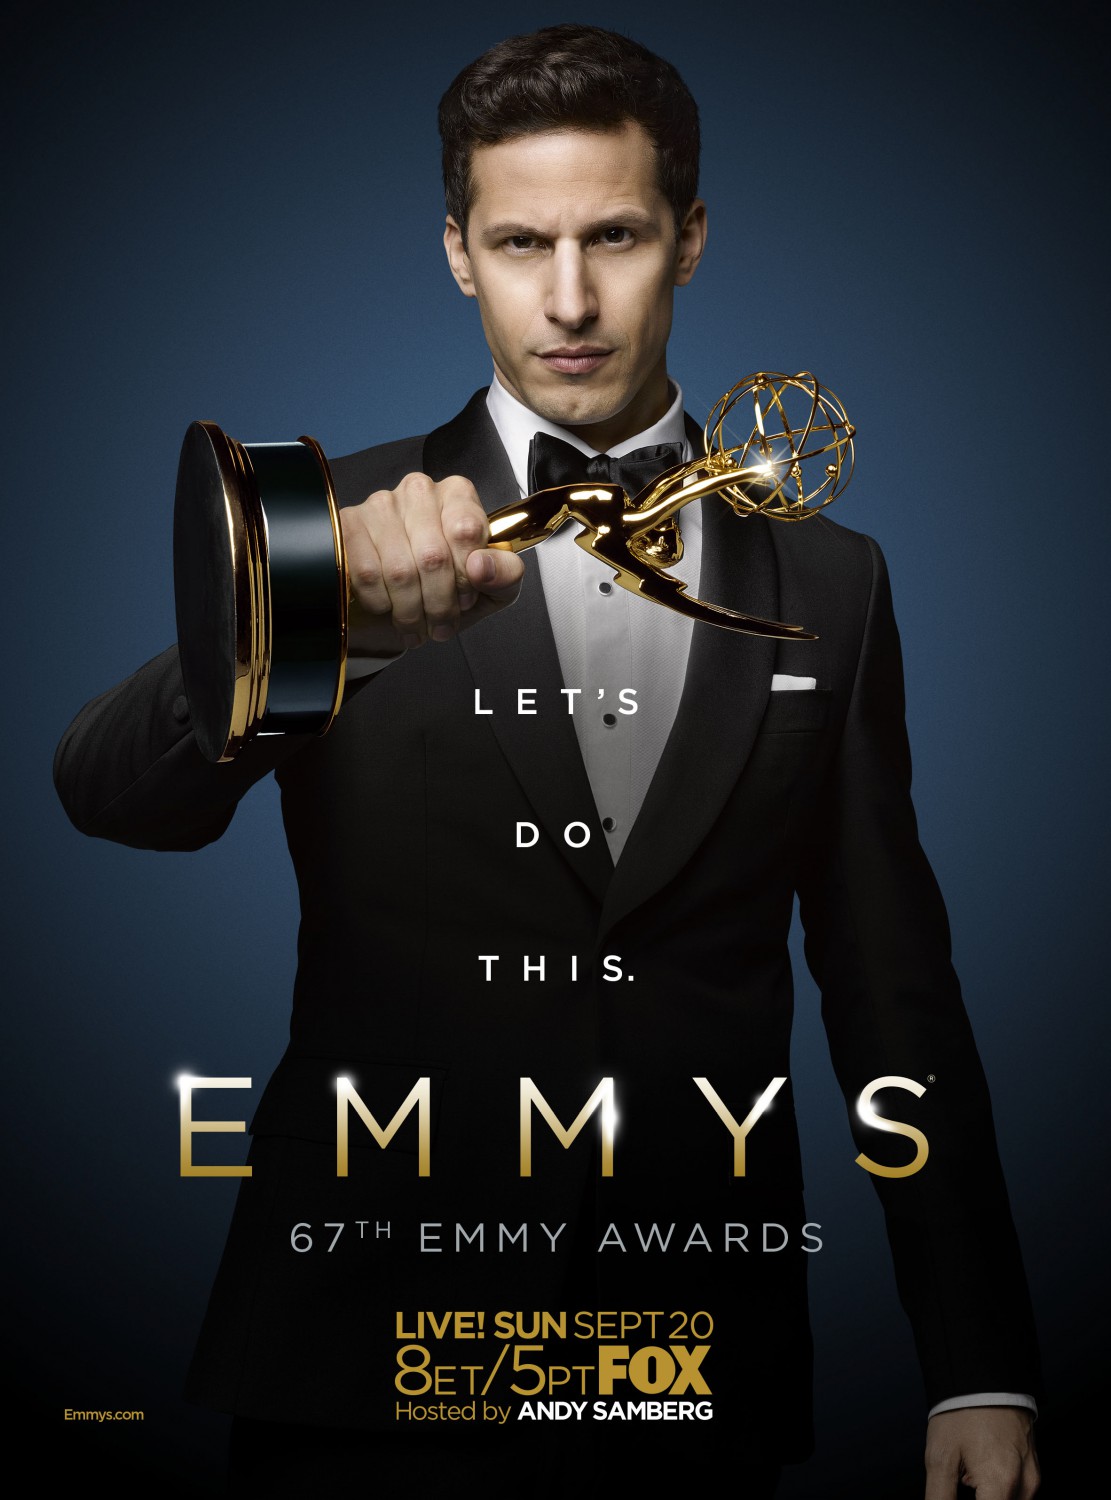 Emmy Awards (4 of 9) Extra Large Movie Poster Image IMP Awards